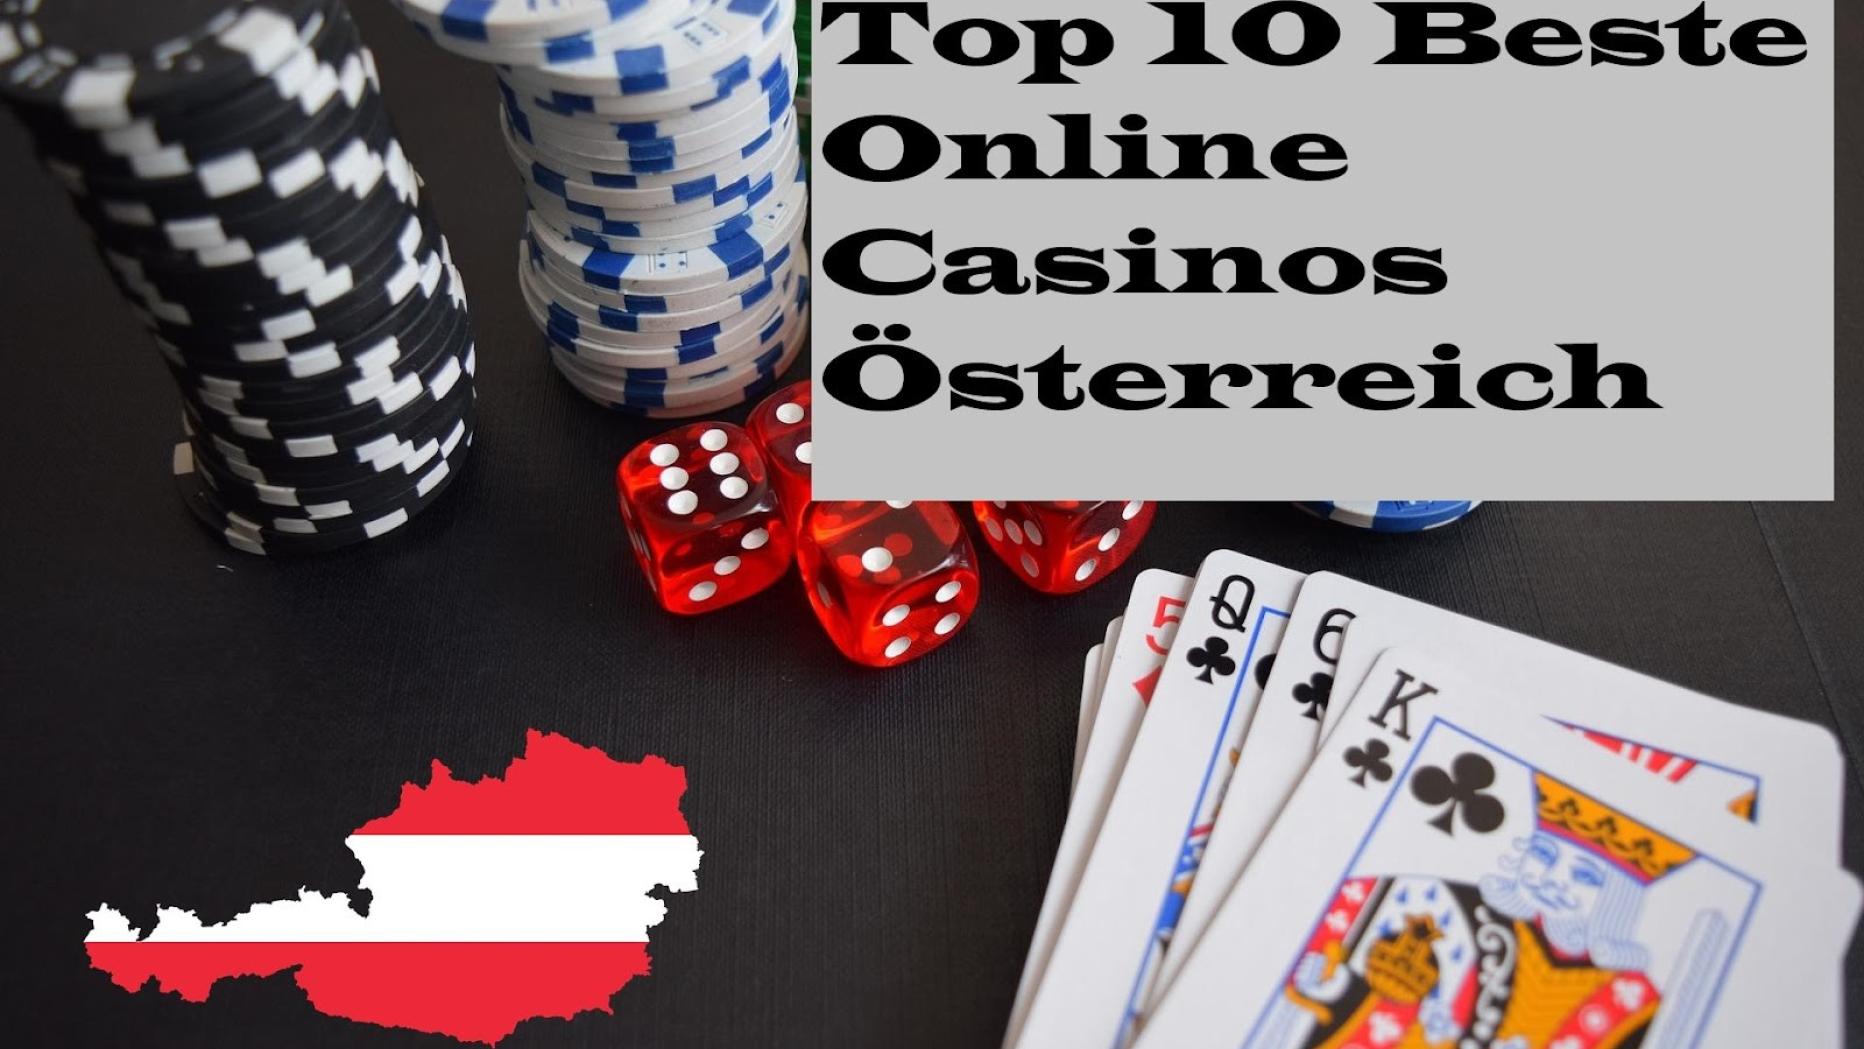 Kurzgeschichte: Die Wahrheit über Casinos Online Österreich